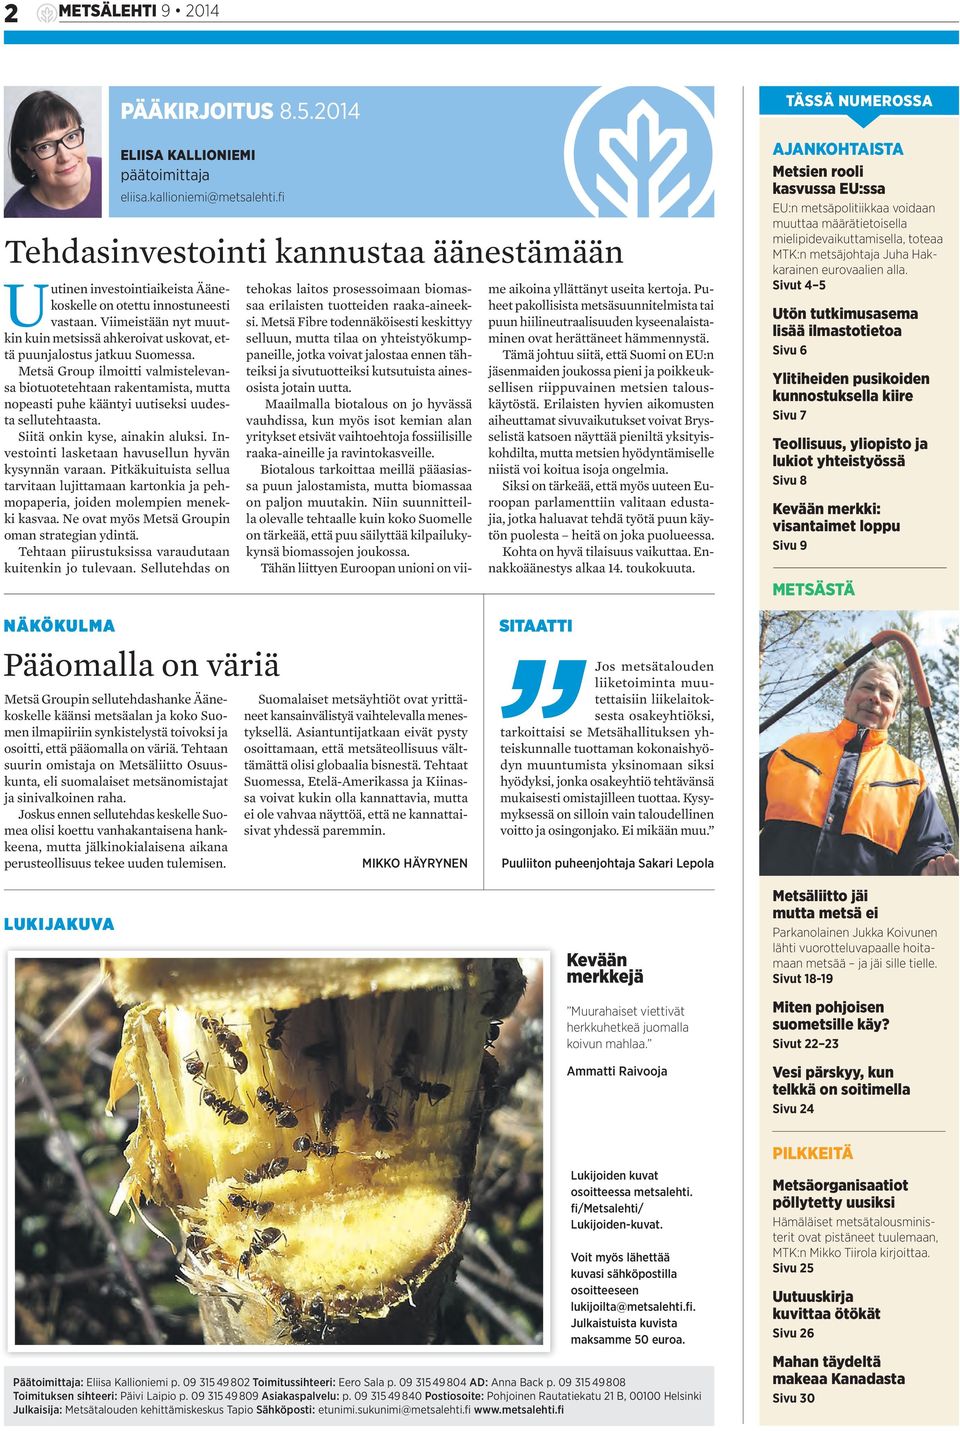 Viimeistään nyt muutkin kuin metsissä ahkeroivat uskovat, että puunjalostus jatkuu Suomessa.